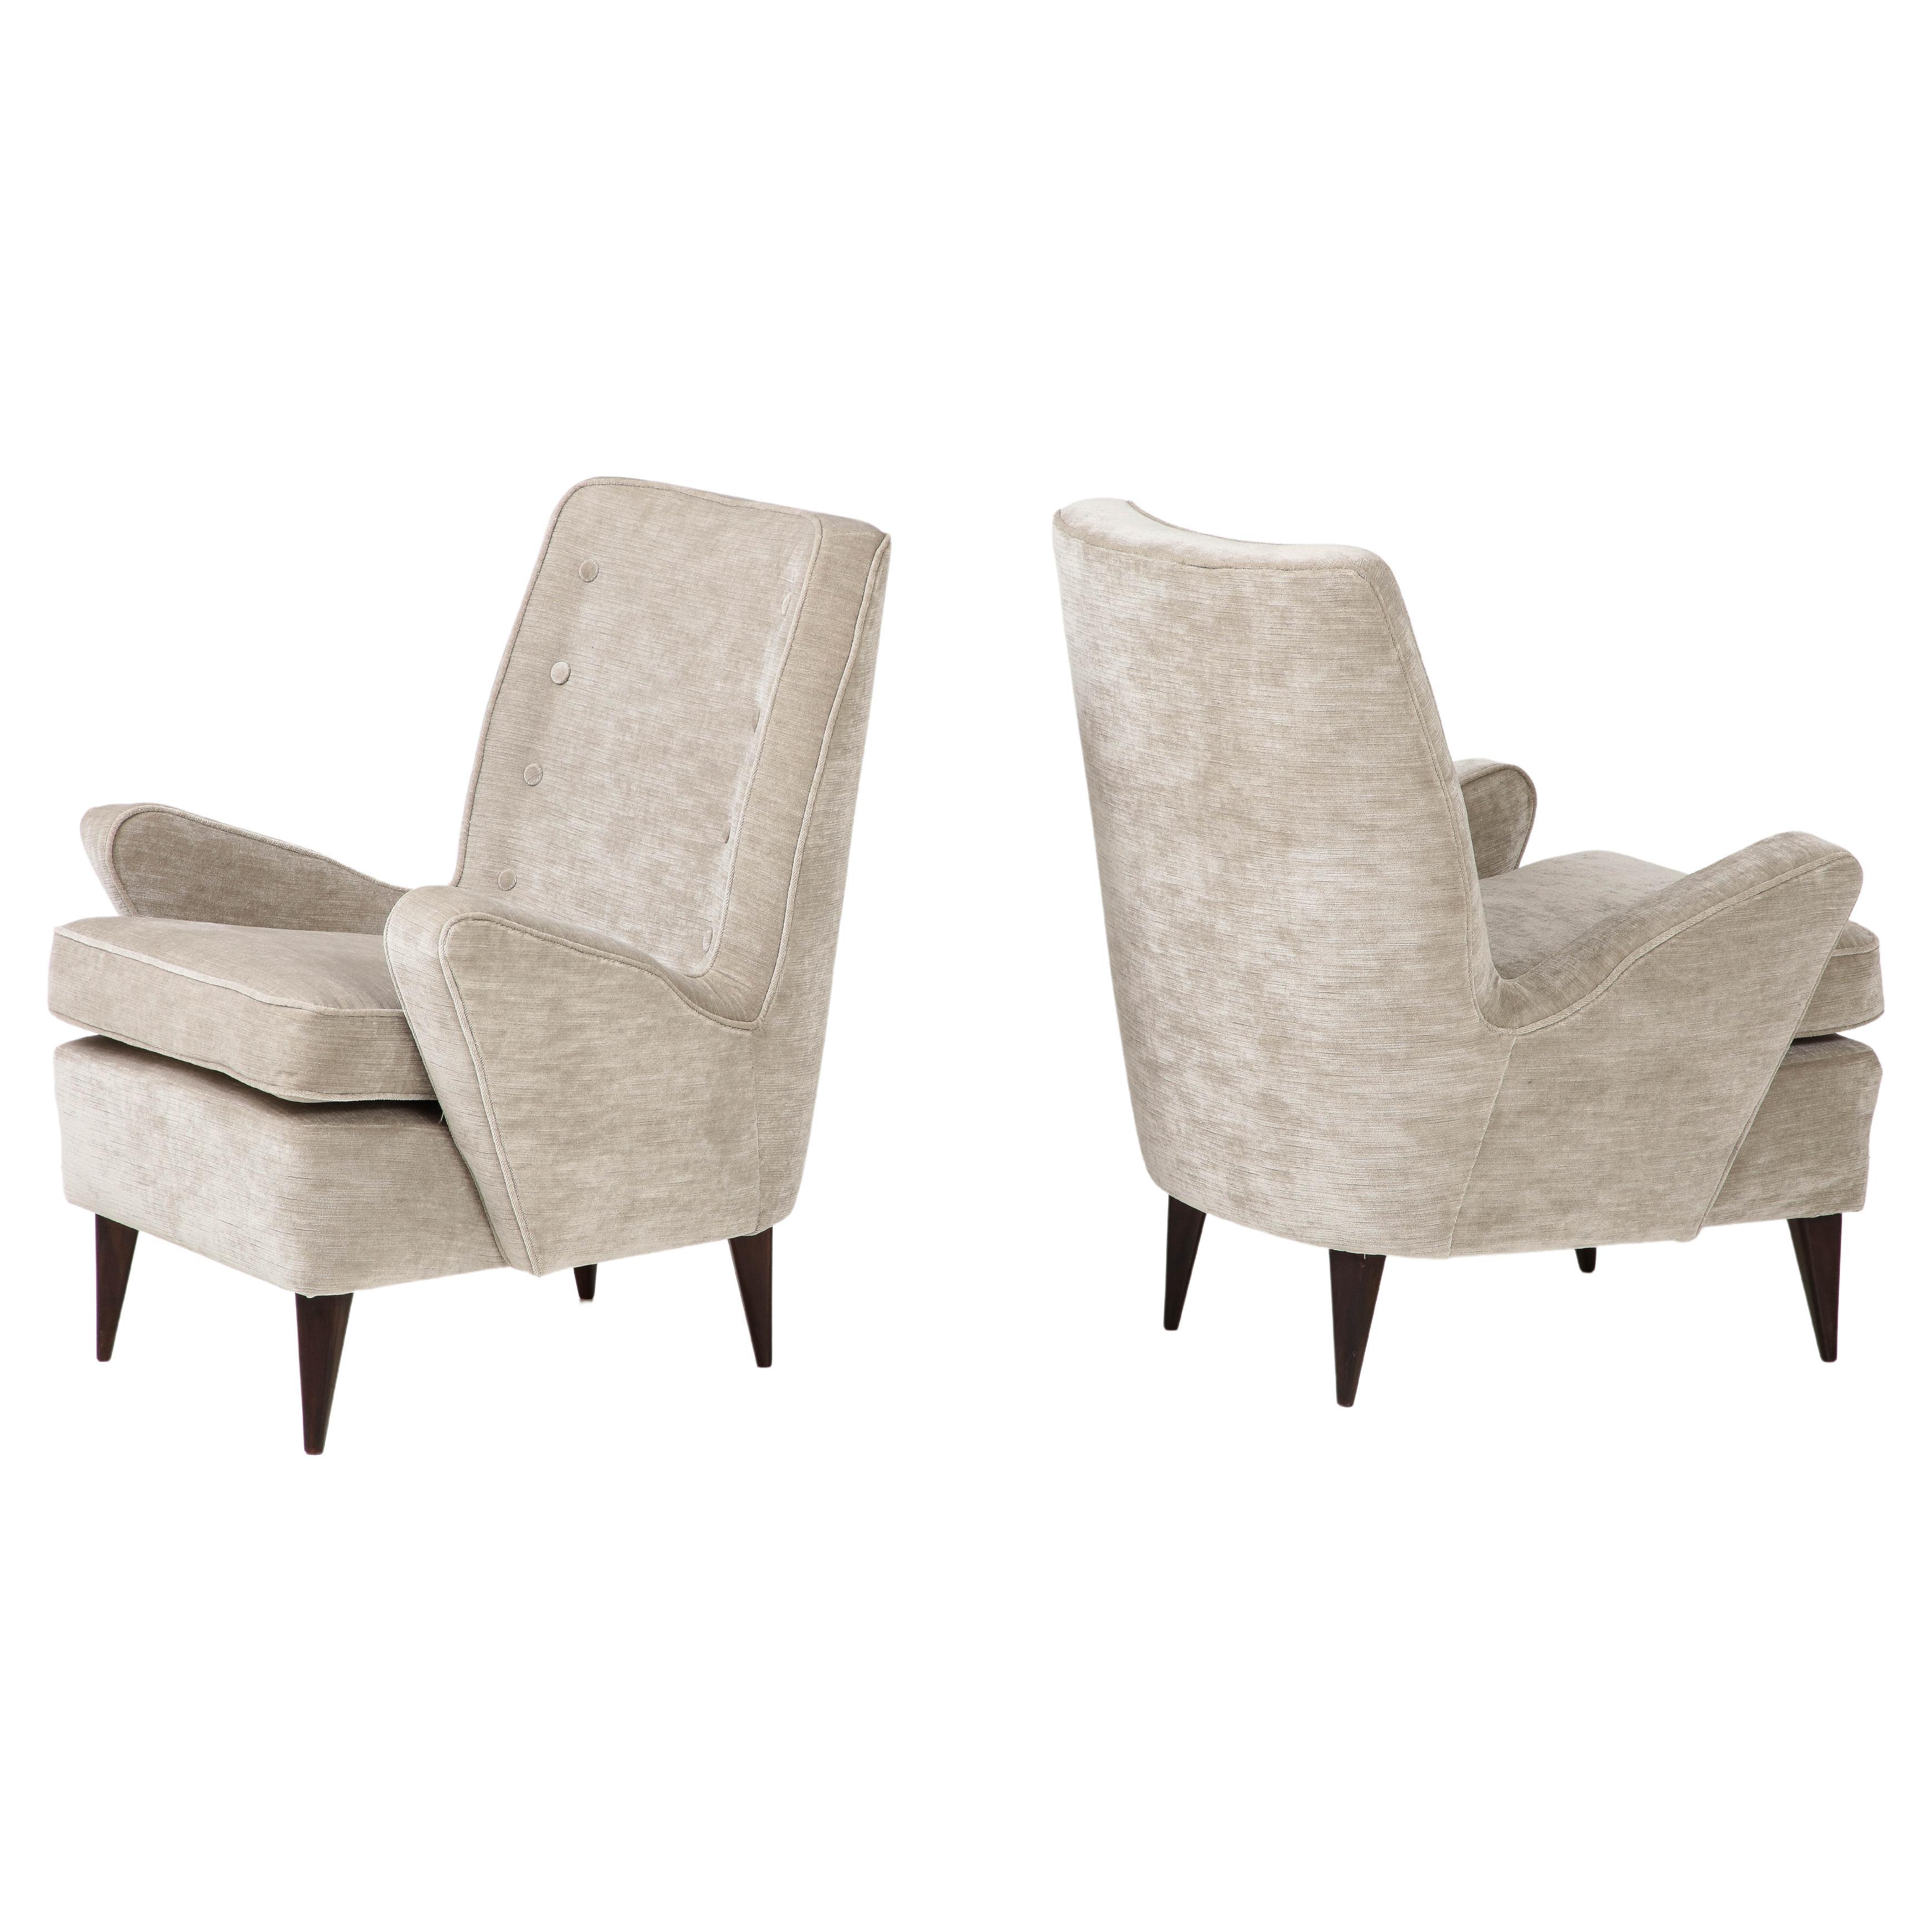 Pair of Italian Midcentury Greige Strie Velvet Upholstered Lounge Chairs